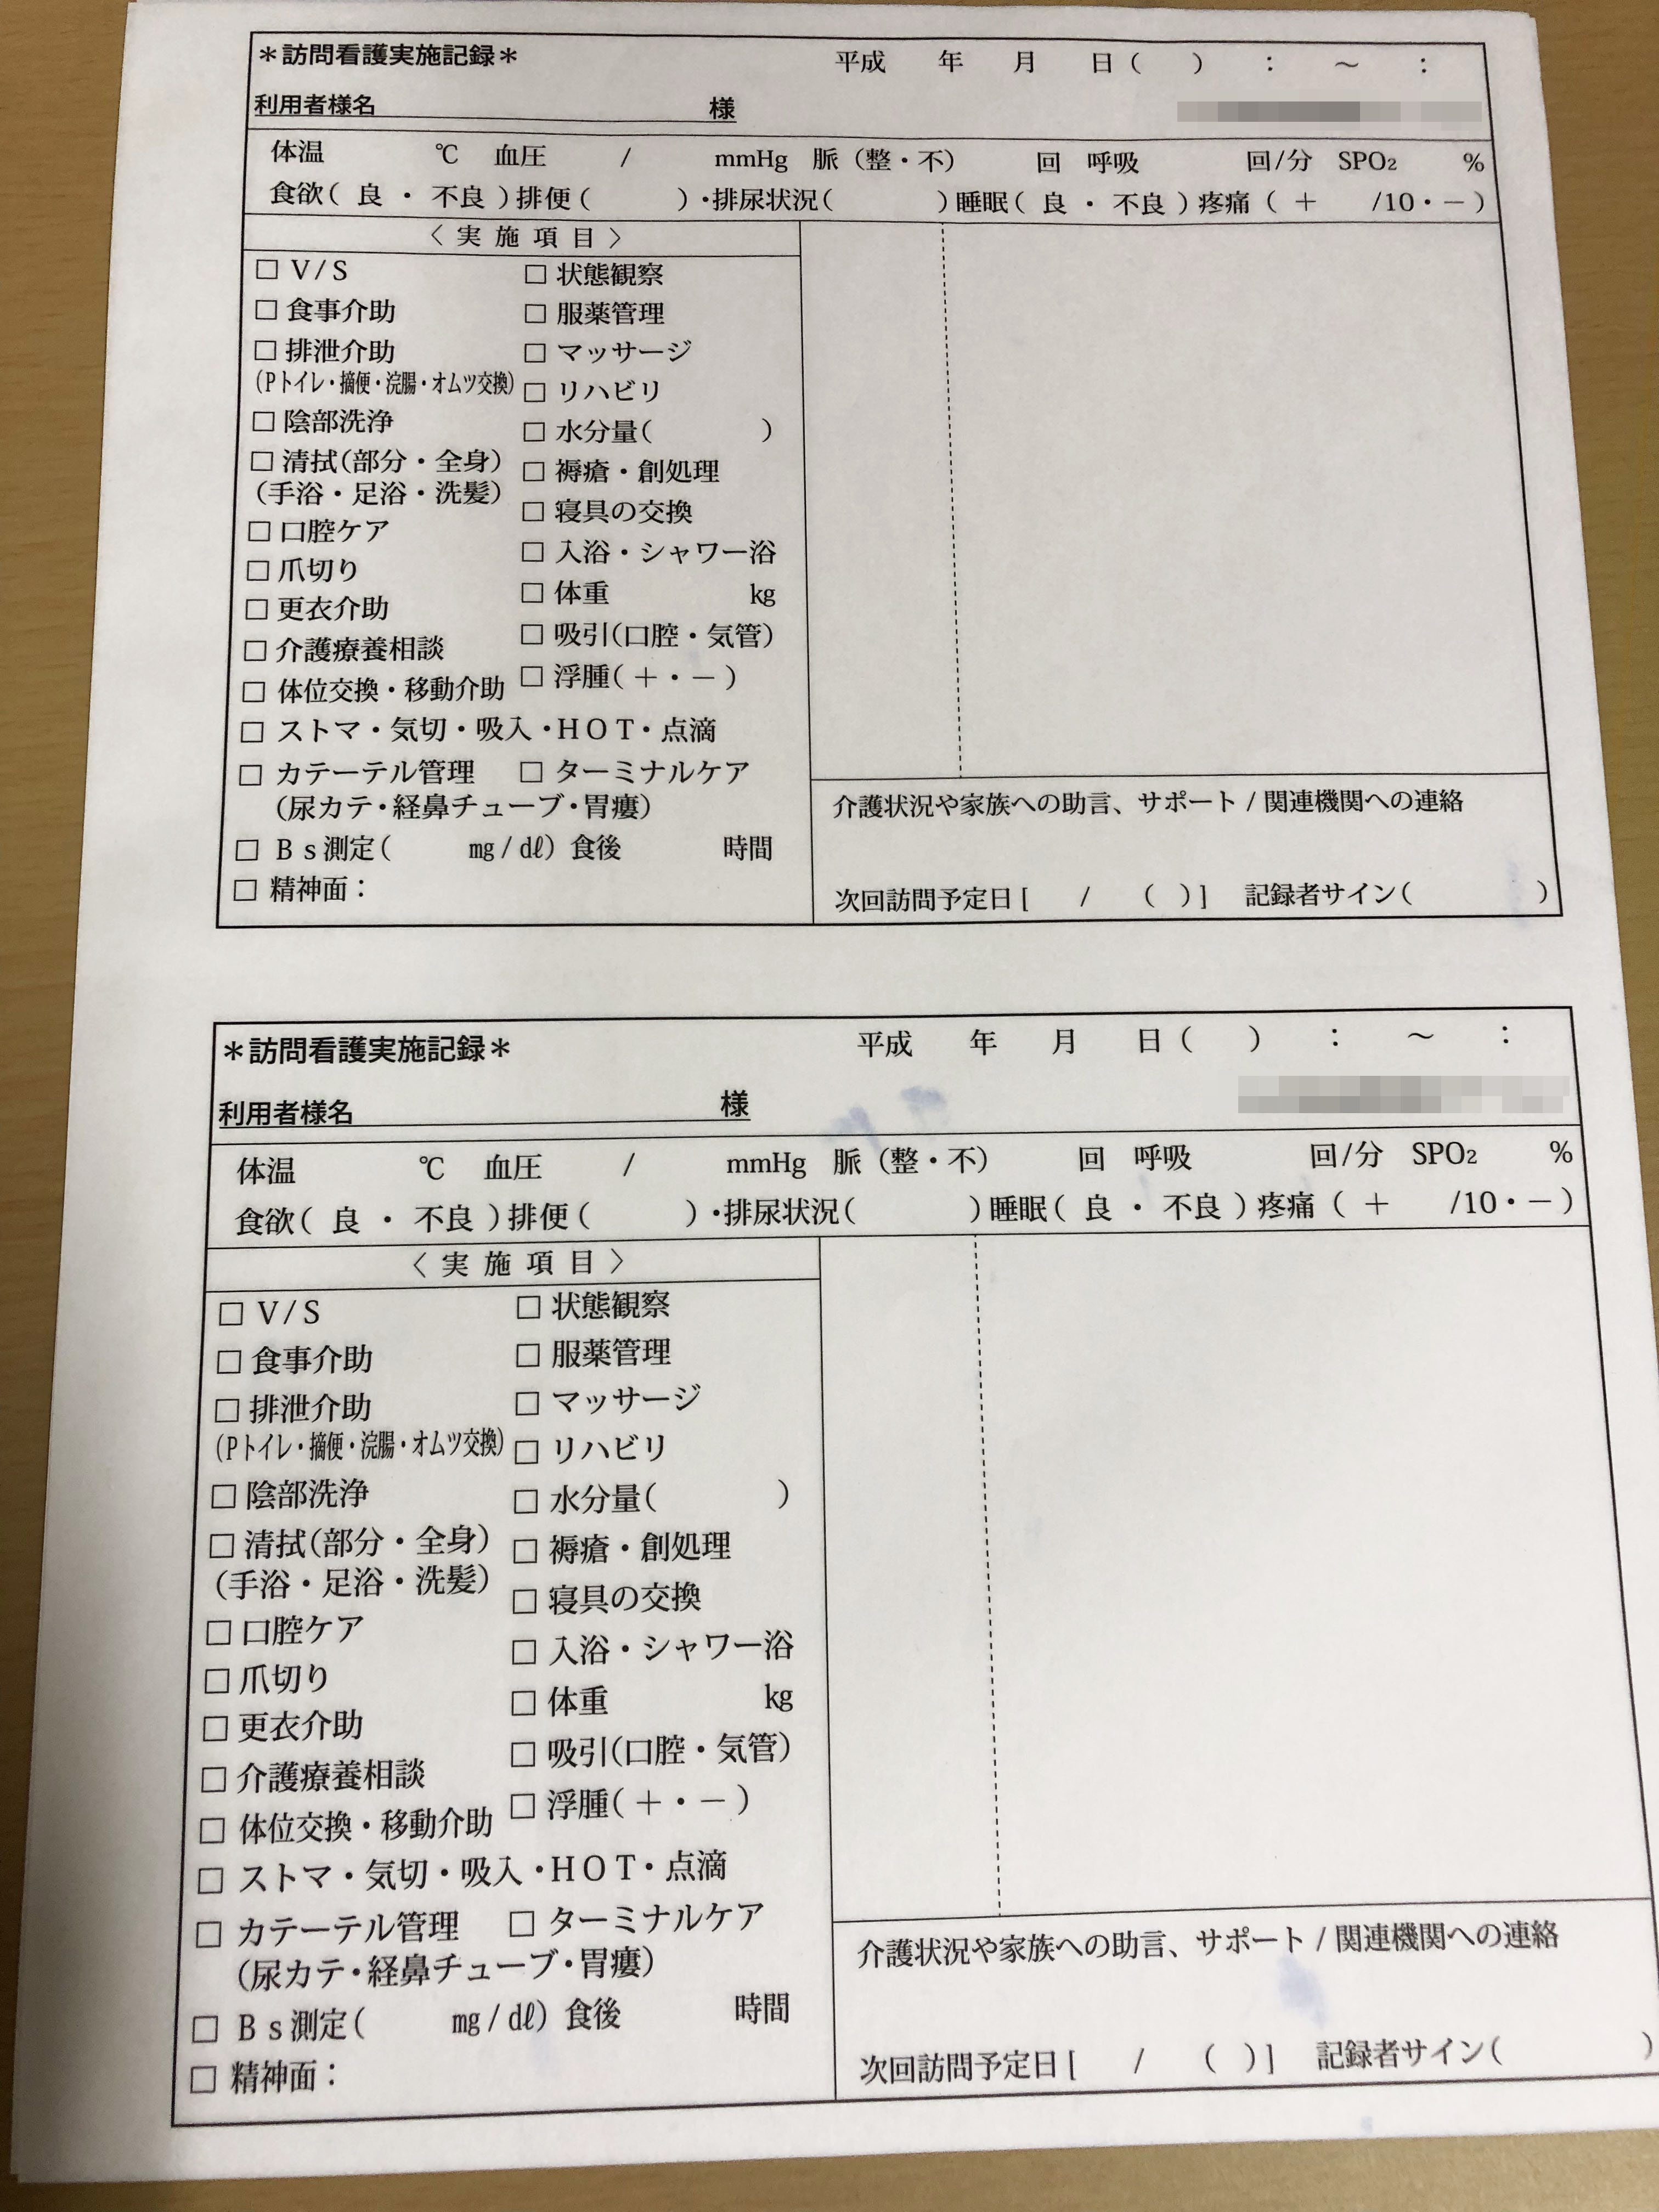 訪問看護業で使用する訪問看護実施記録(2枚複写)の伝票作成実績